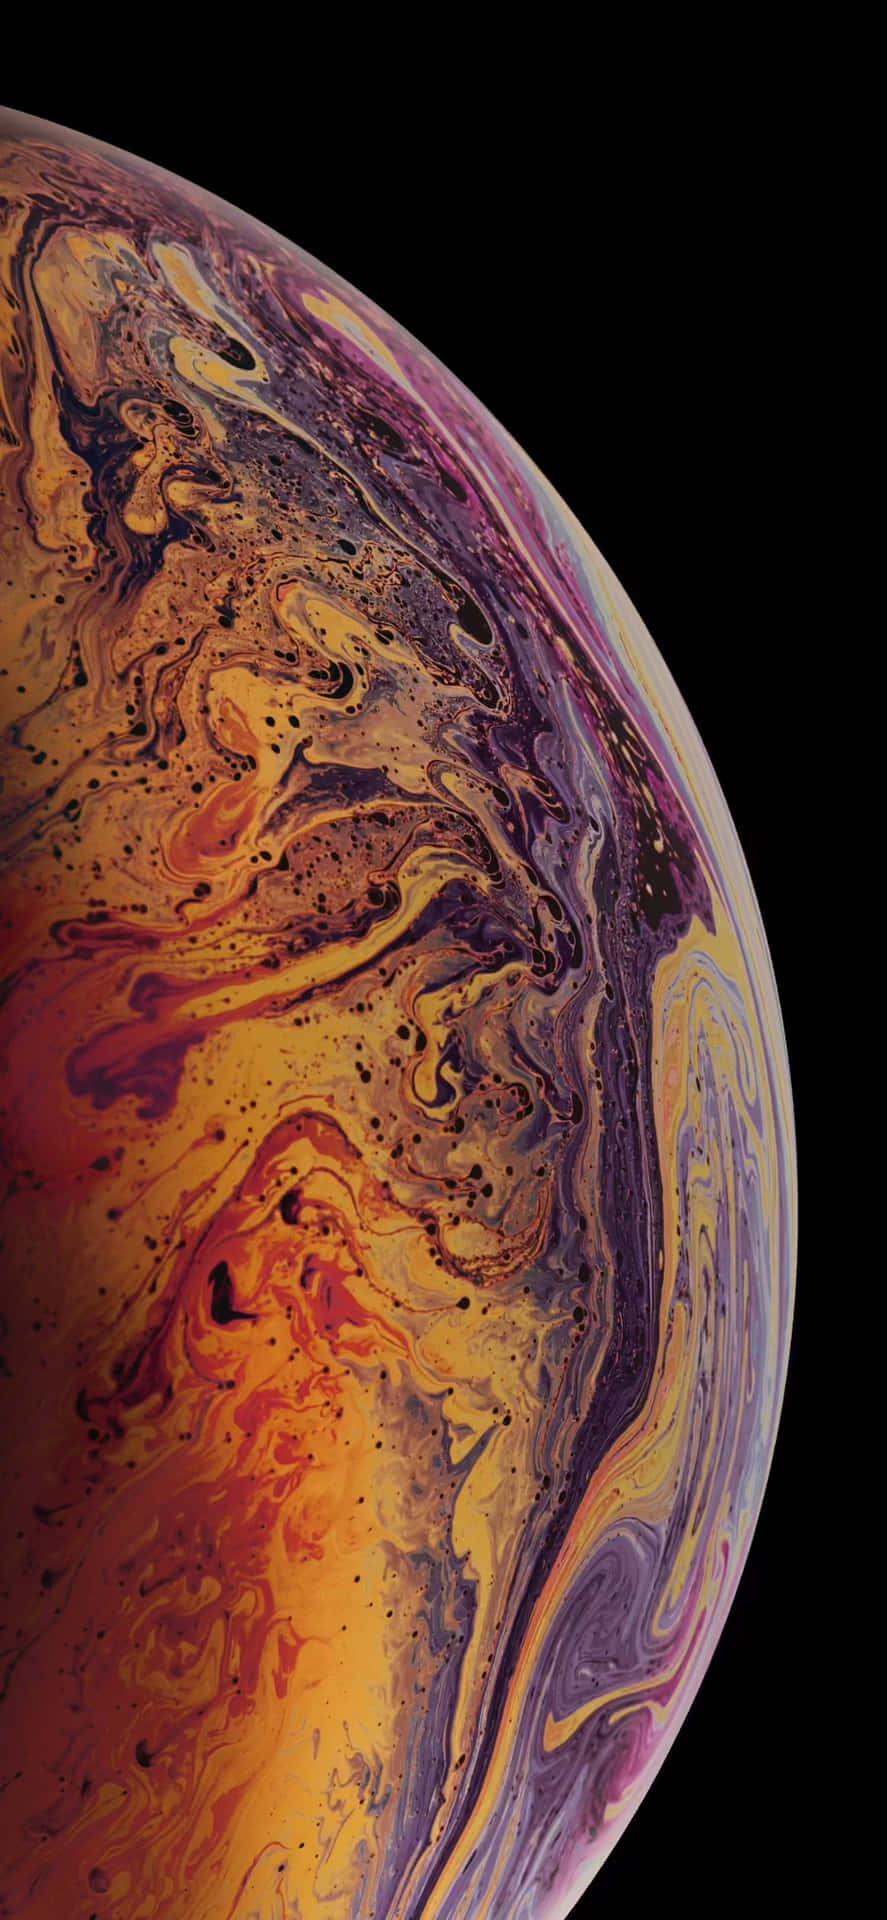 Nyd et spektakulært udsyn af jorden fra din iPhone. Wallpaper